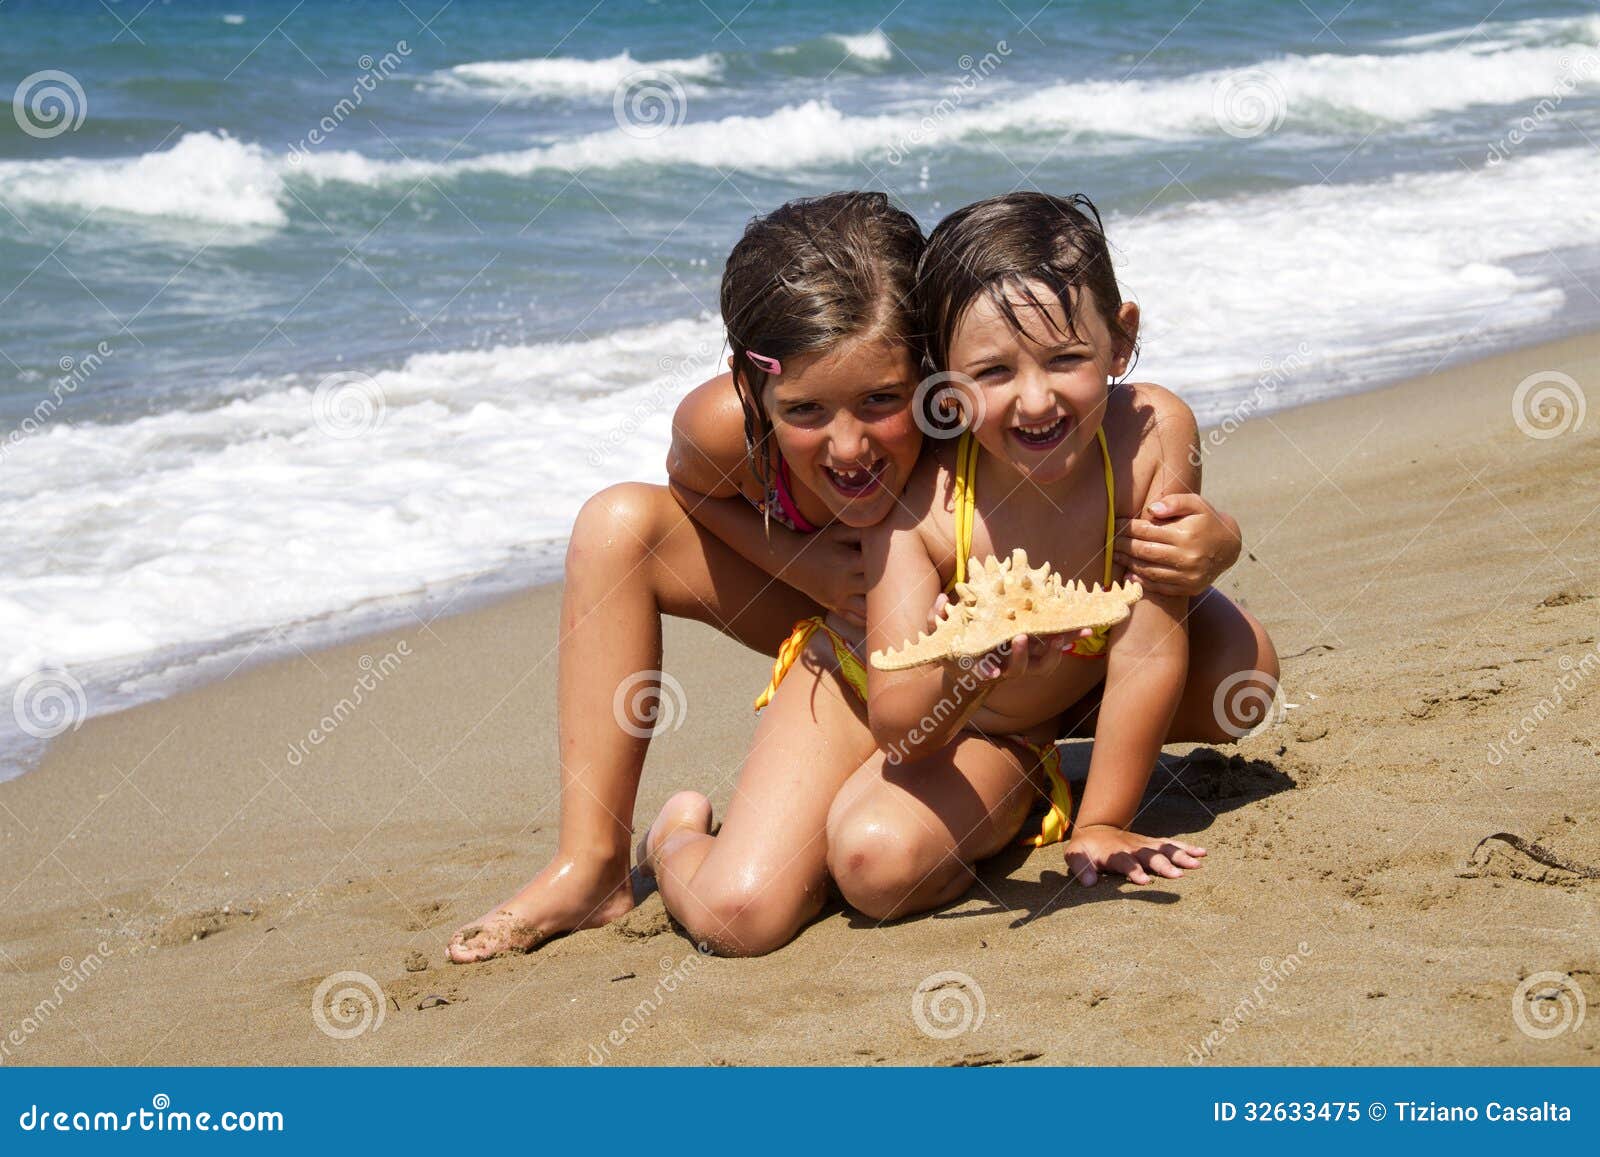 дети на голом пляже фото 111